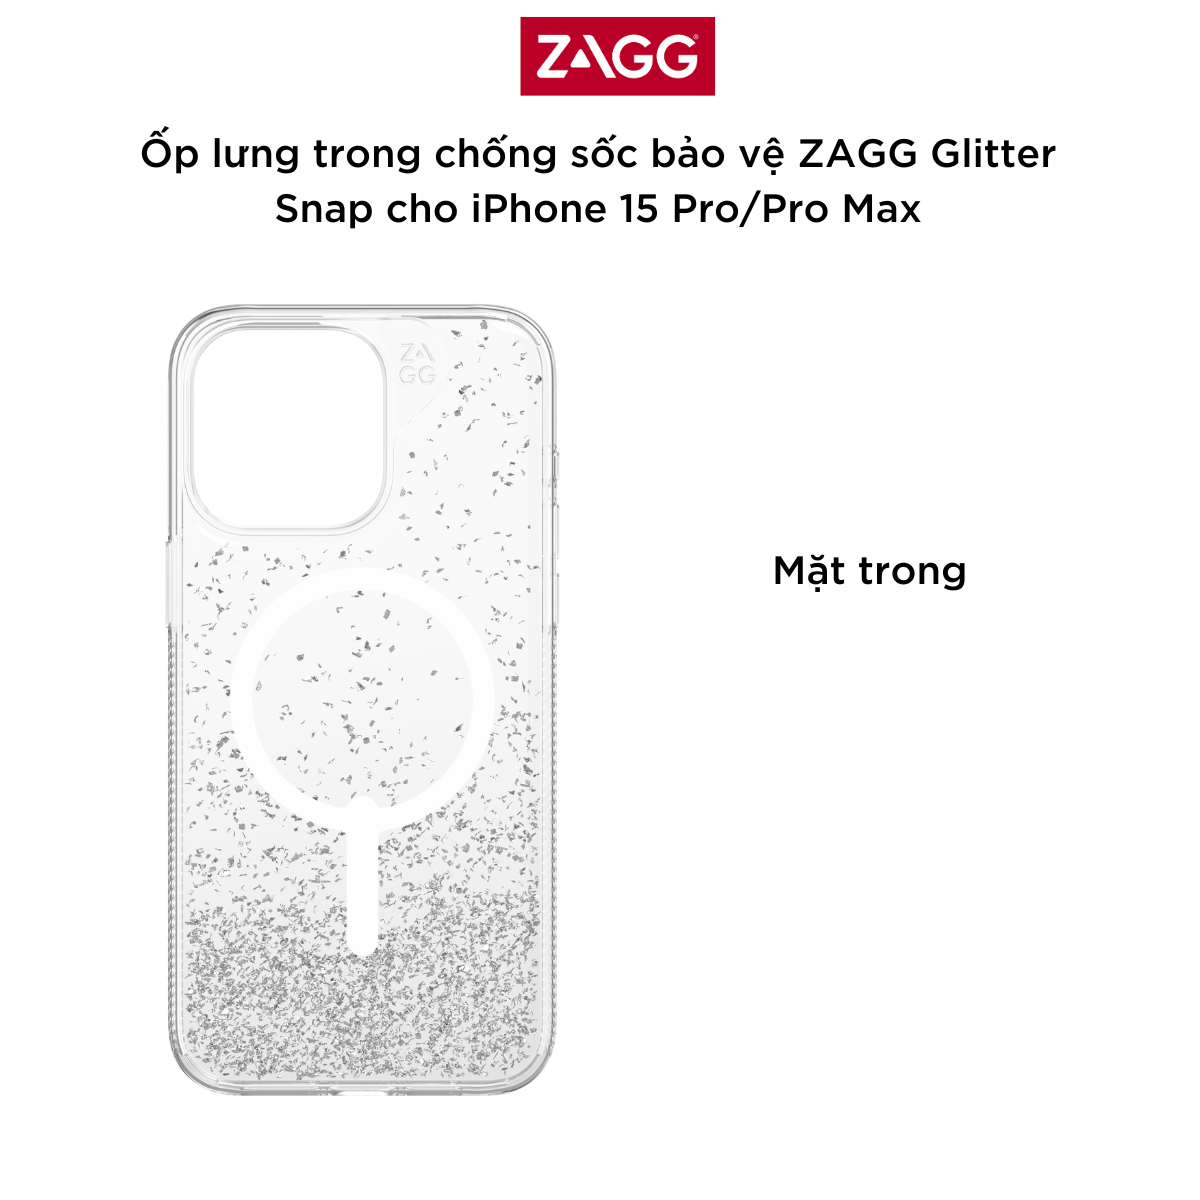 Ốp lưng trong chống sốc bảo vệ ZAGG Glitter Snap cho iPhone 15 Pro/Pro Max - bảo hành 1 năm - Hàng Chính Hãng